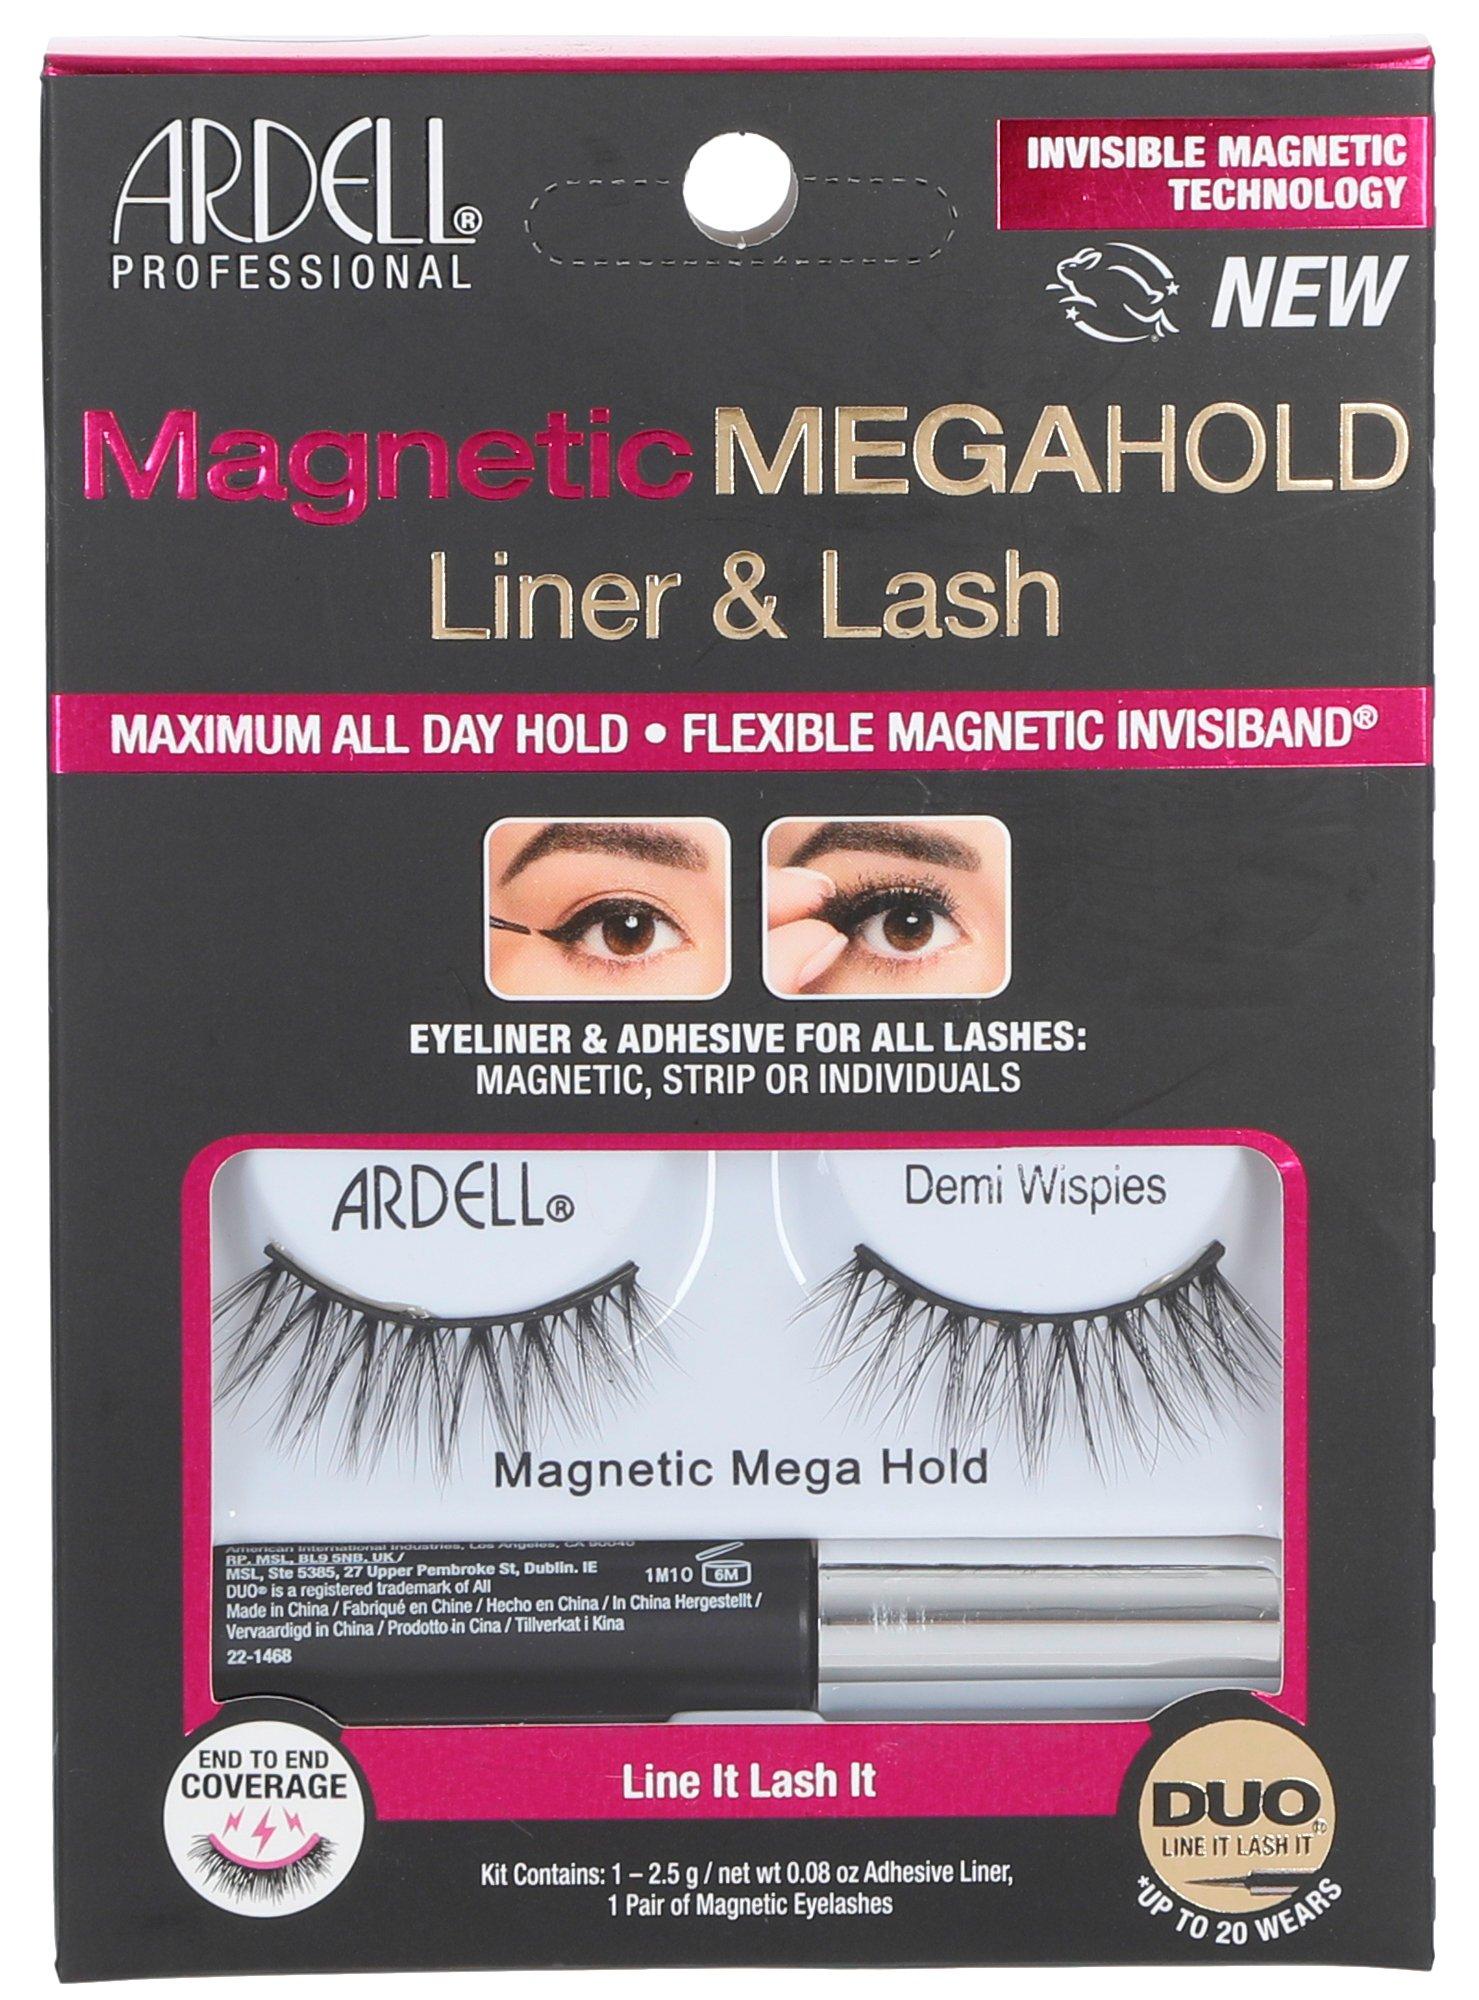 Magnetic Faux Mink Eyelashes